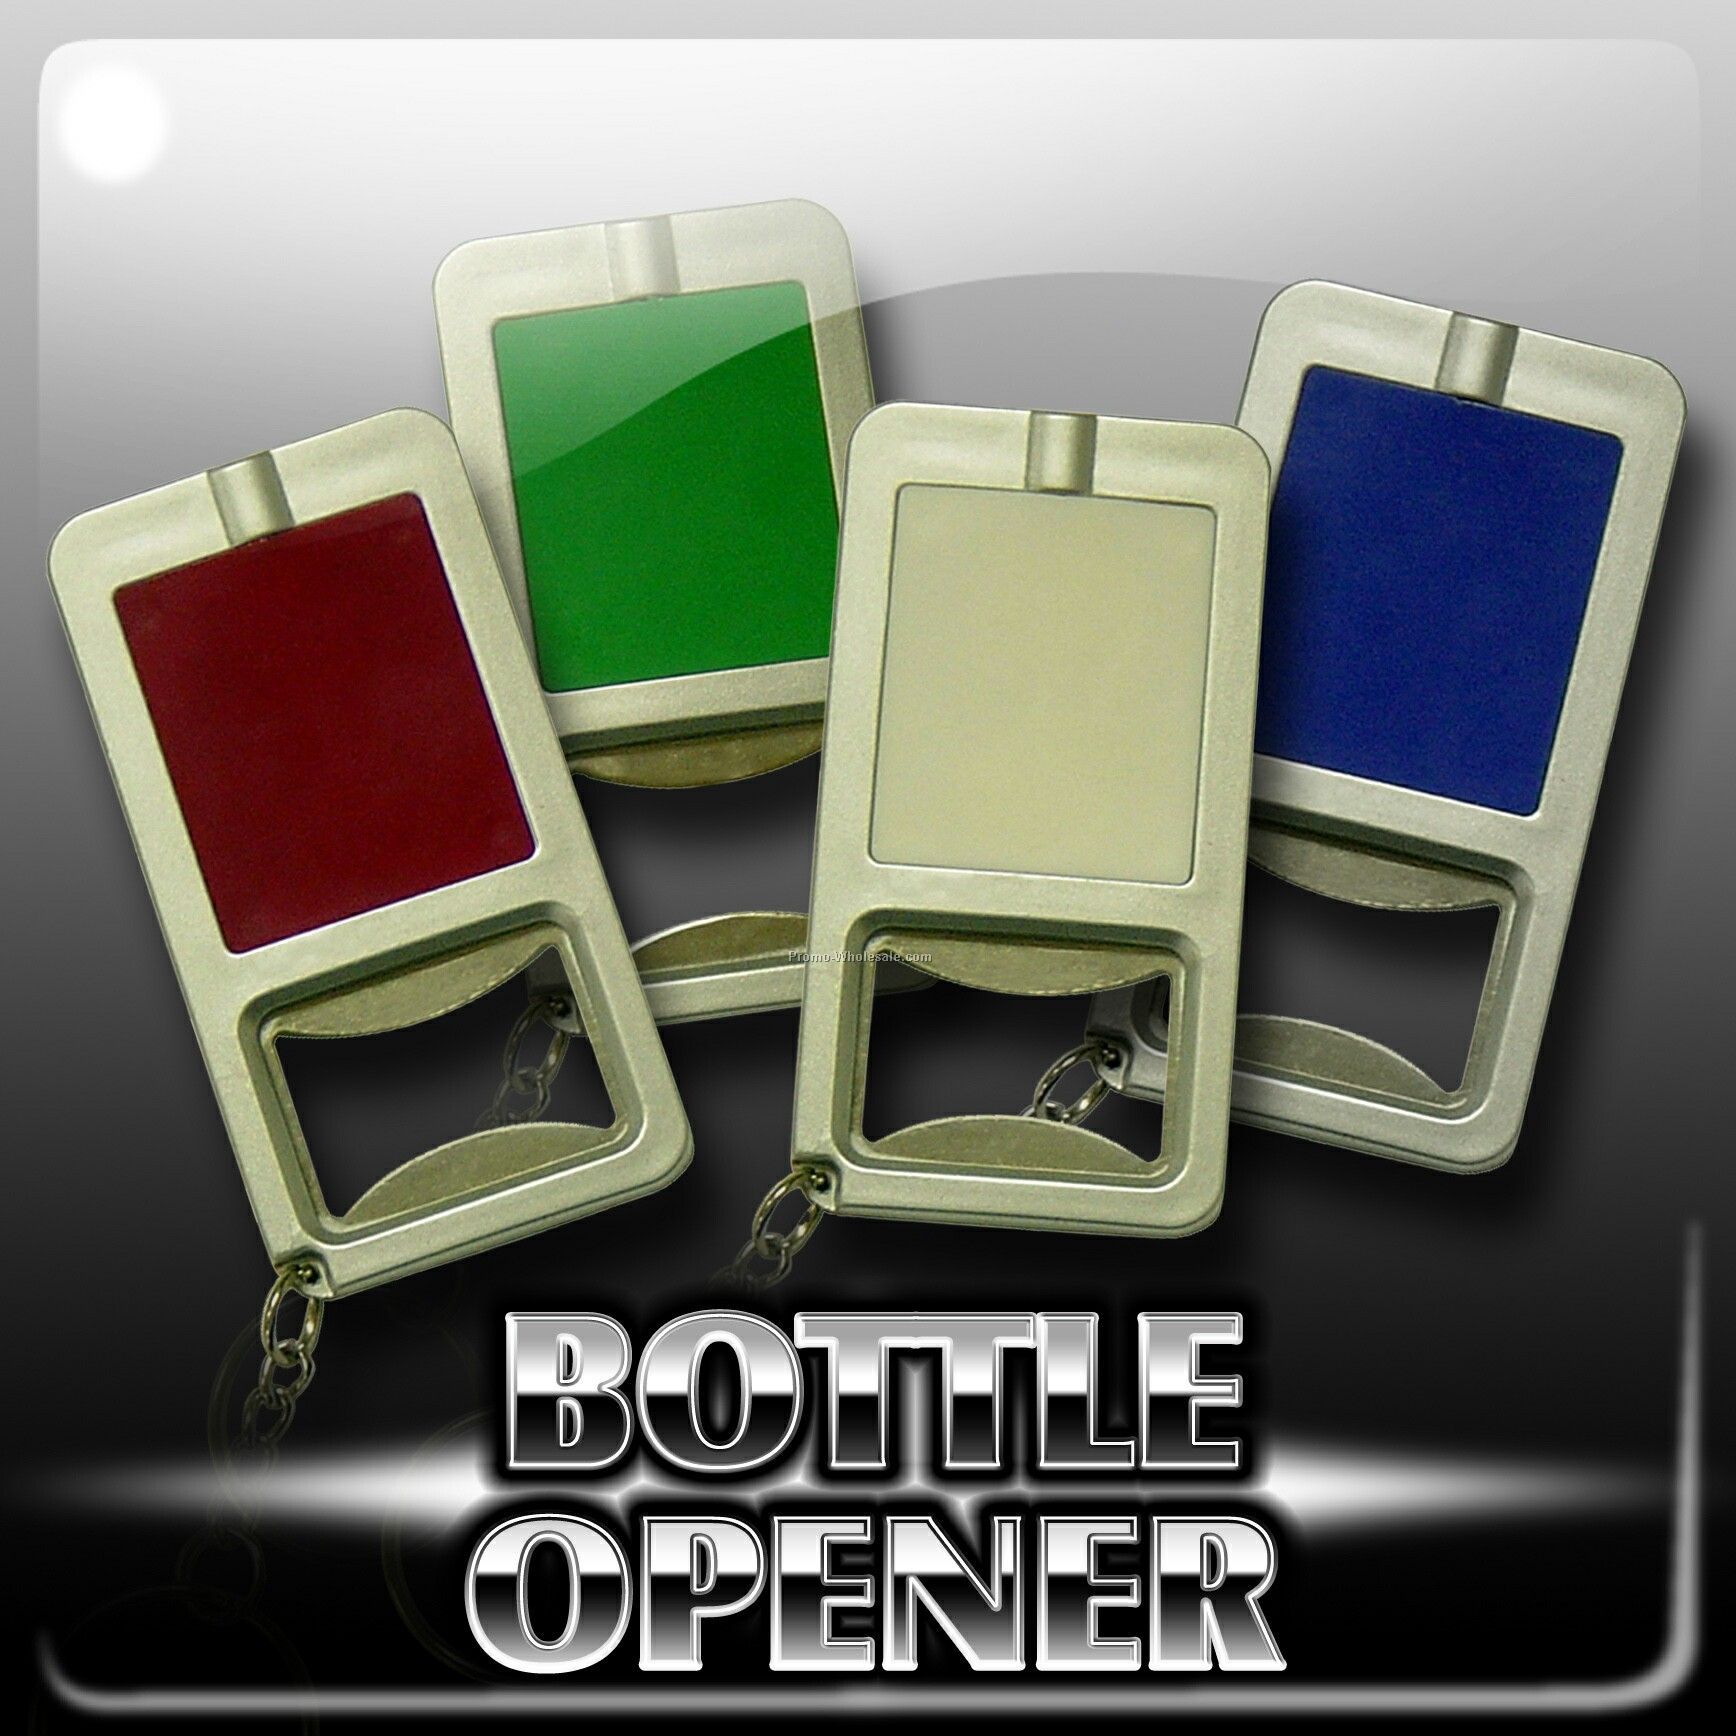 Bottle-opener With LED Flashlight Keychain